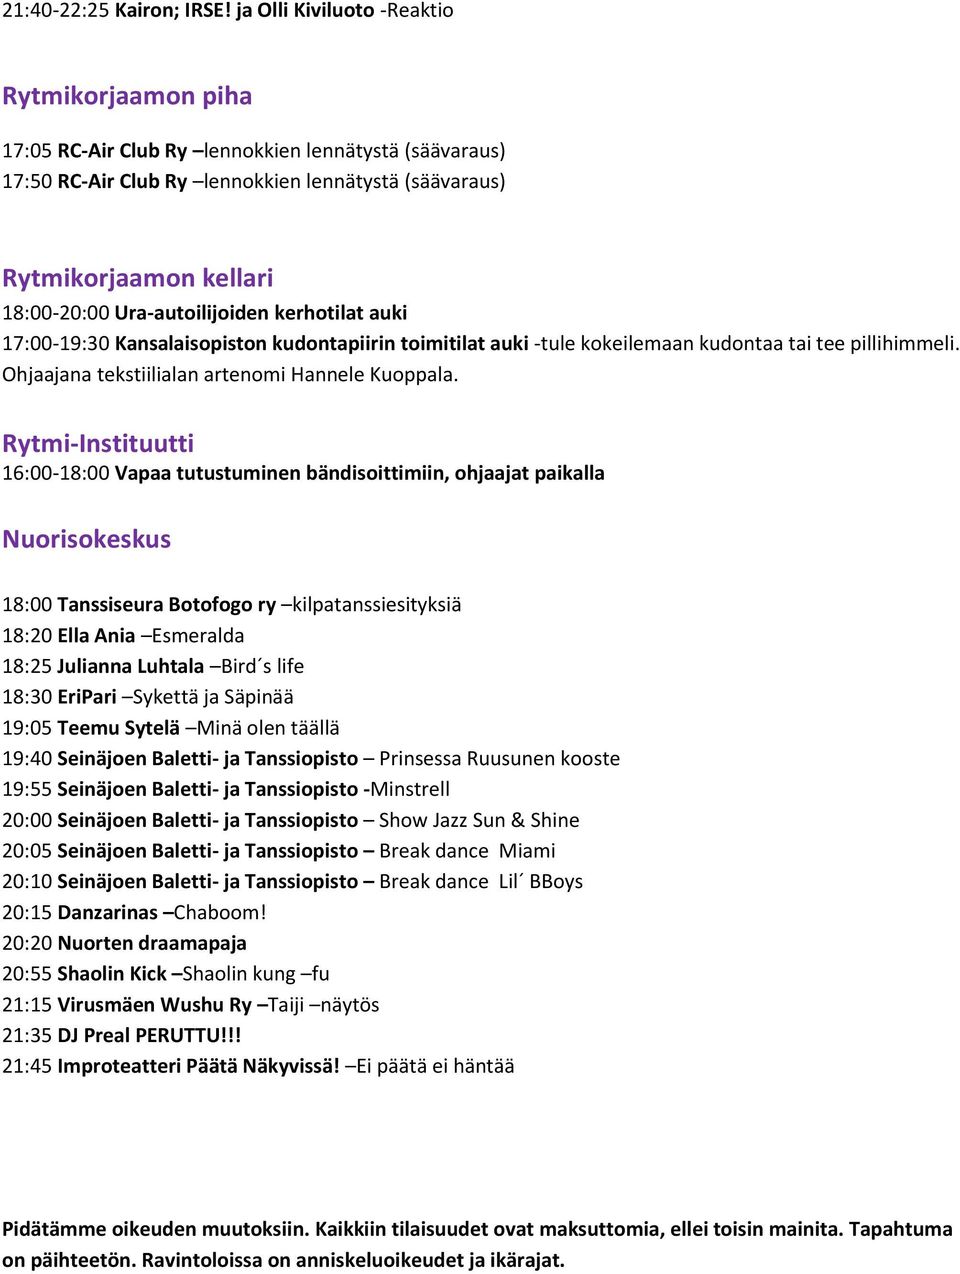 Ura-autoilijoiden kerhotilat auki 17:00-19:30 Kansalaisopiston kudontapiirin toimitilat auki -tule kokeilemaan kudontaa tai tee pillihimmeli. Ohjaajana tekstiilialan artenomi Hannele Kuoppala.